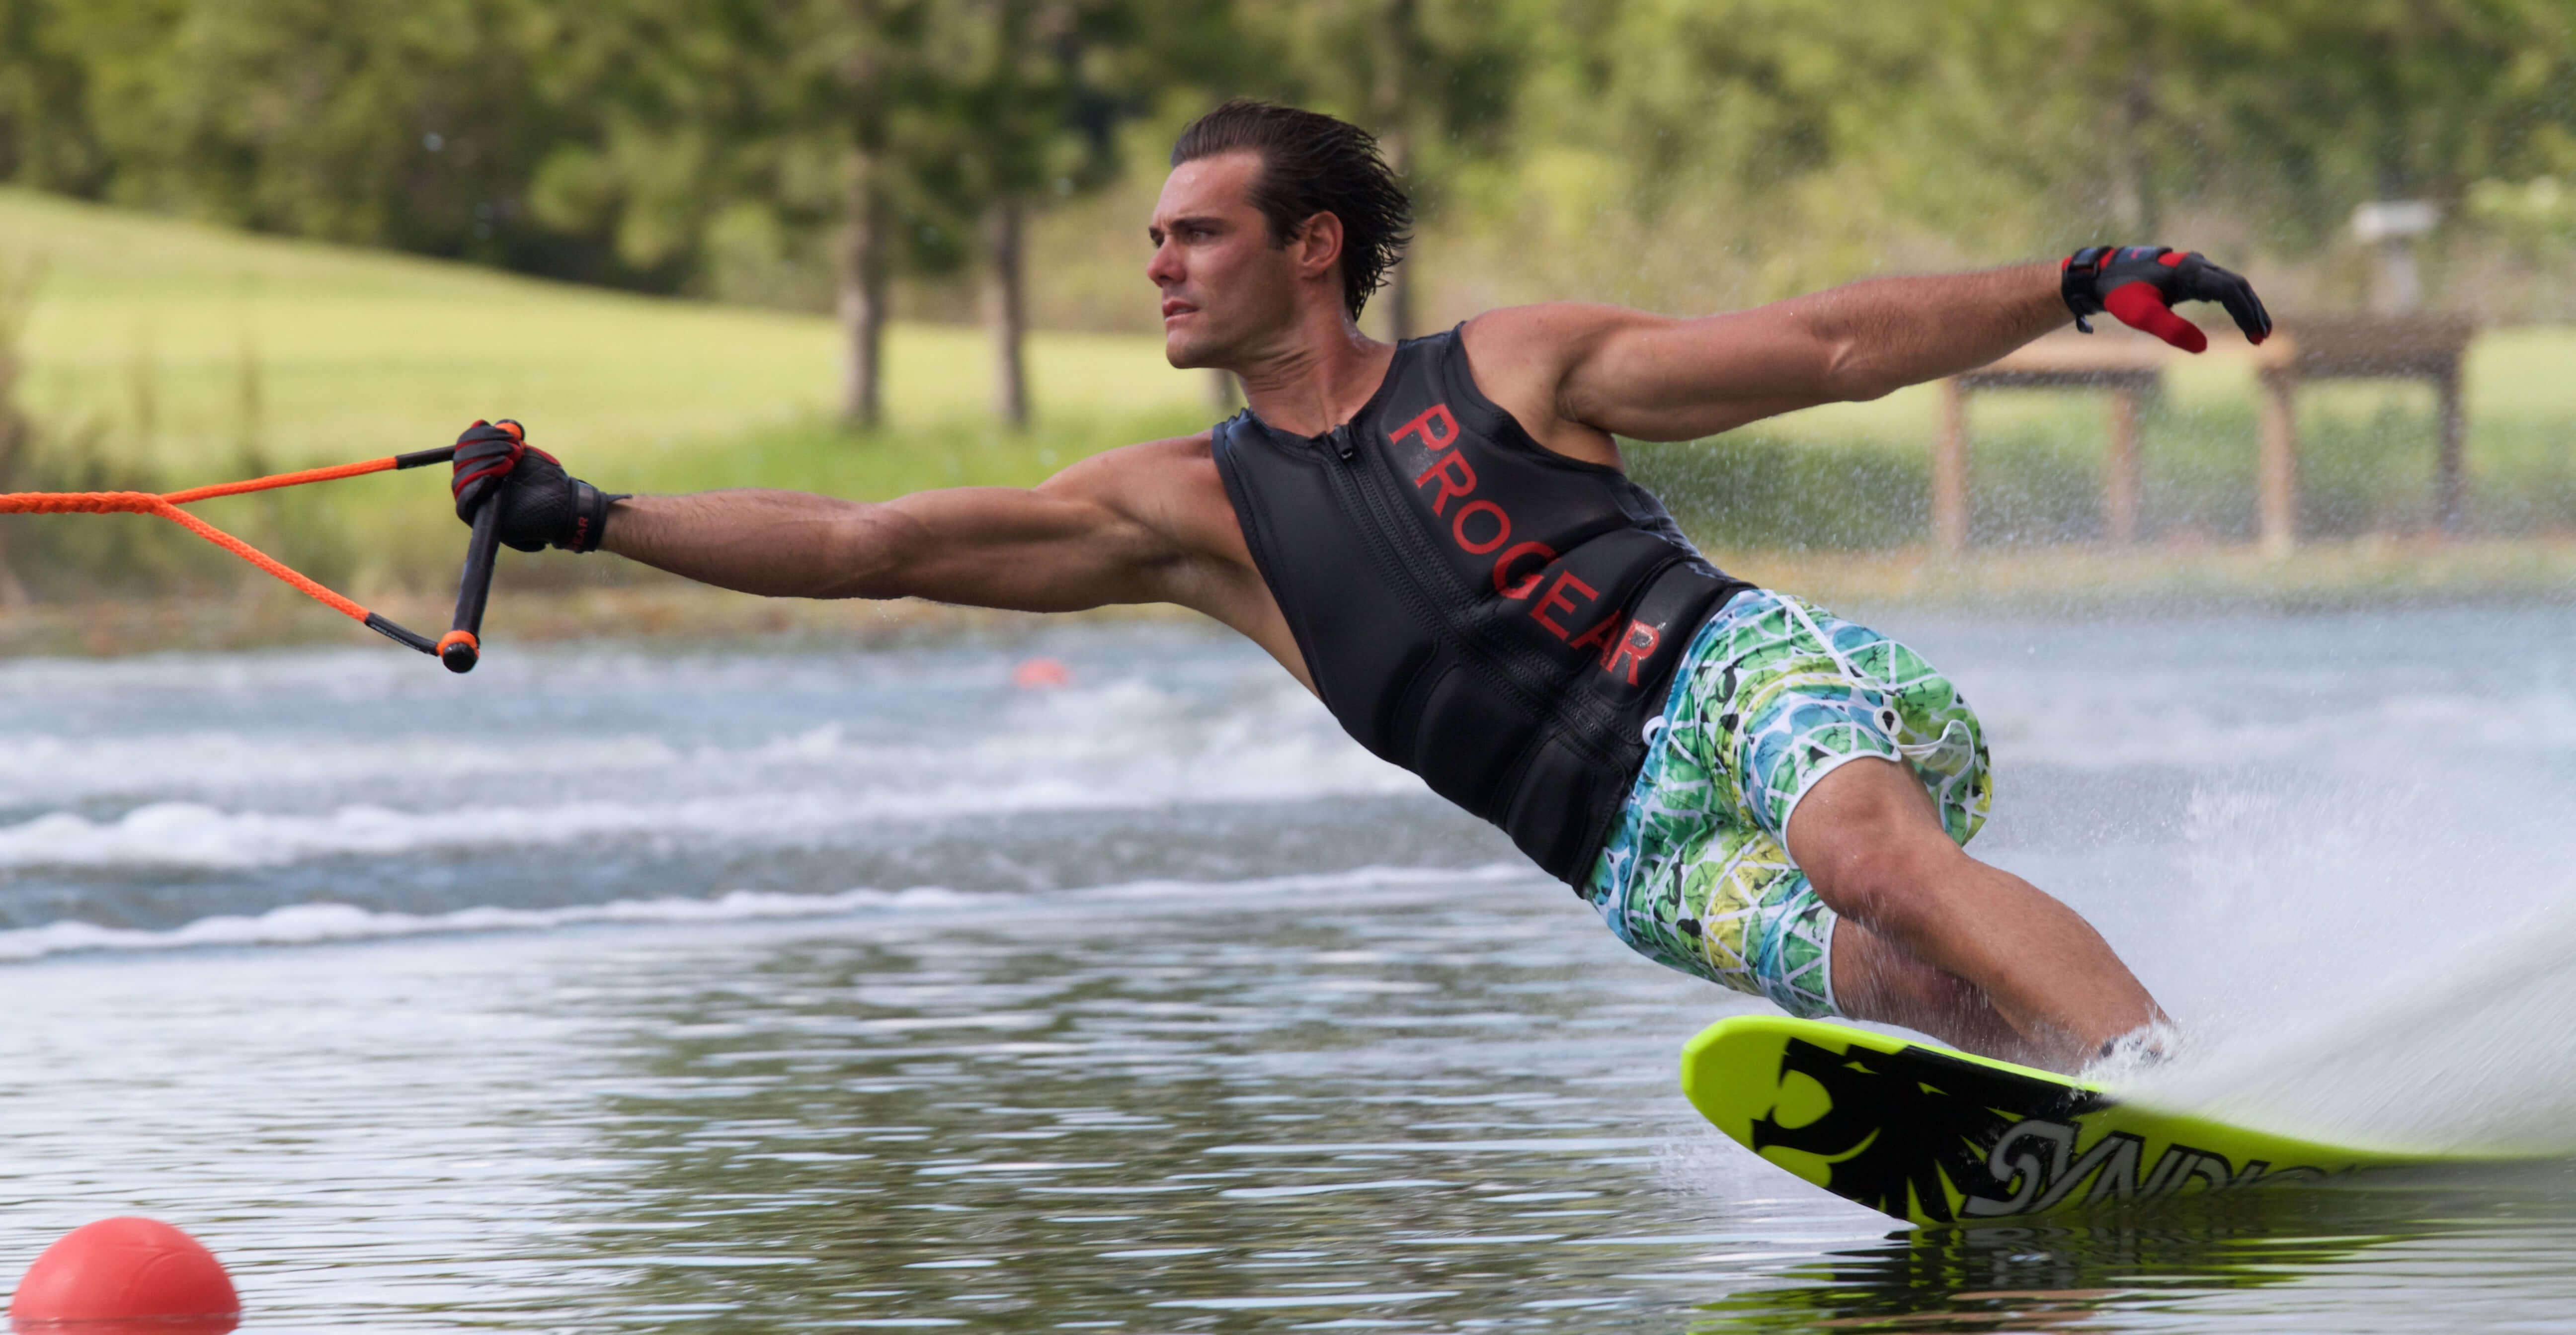 A man practiving wakeboard on Lake geneva